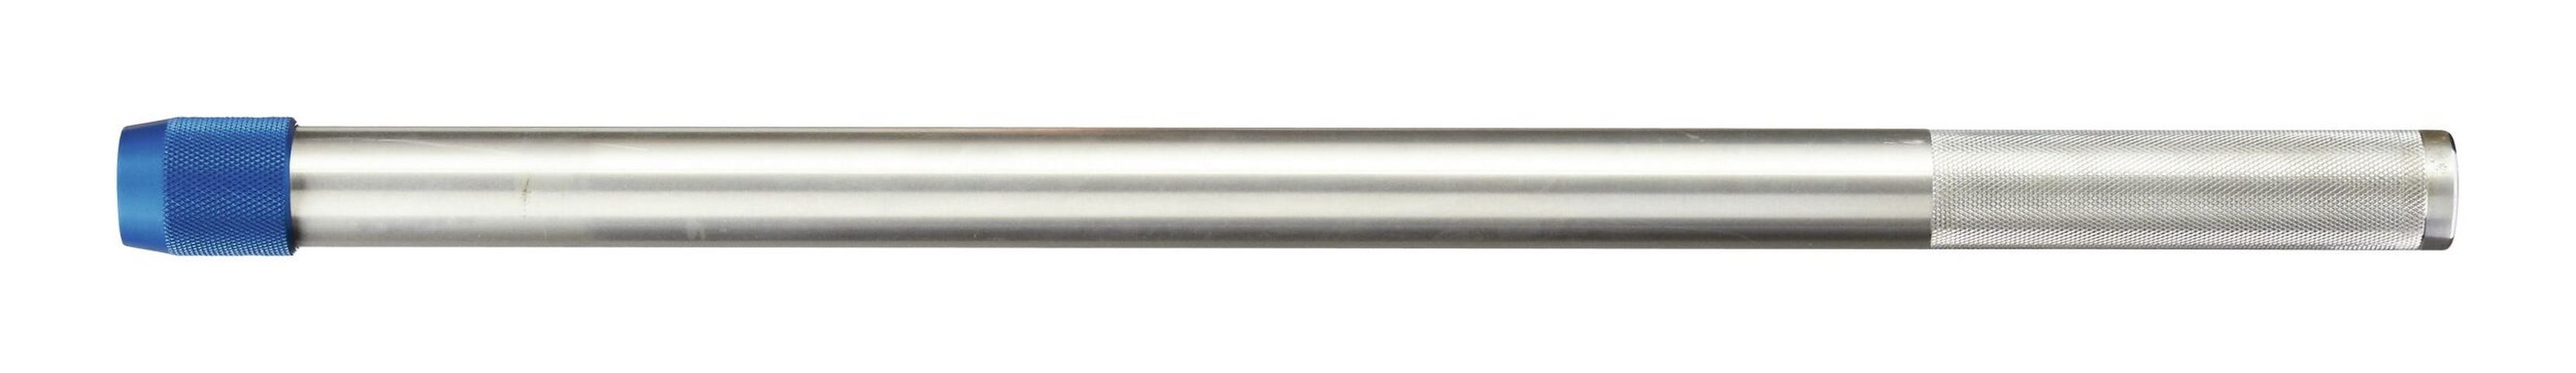 Drehmomentschlüssel, mm für Aluminium Drehmomentschlüssel Aufsteckrohr 762 Gedore Dremometer